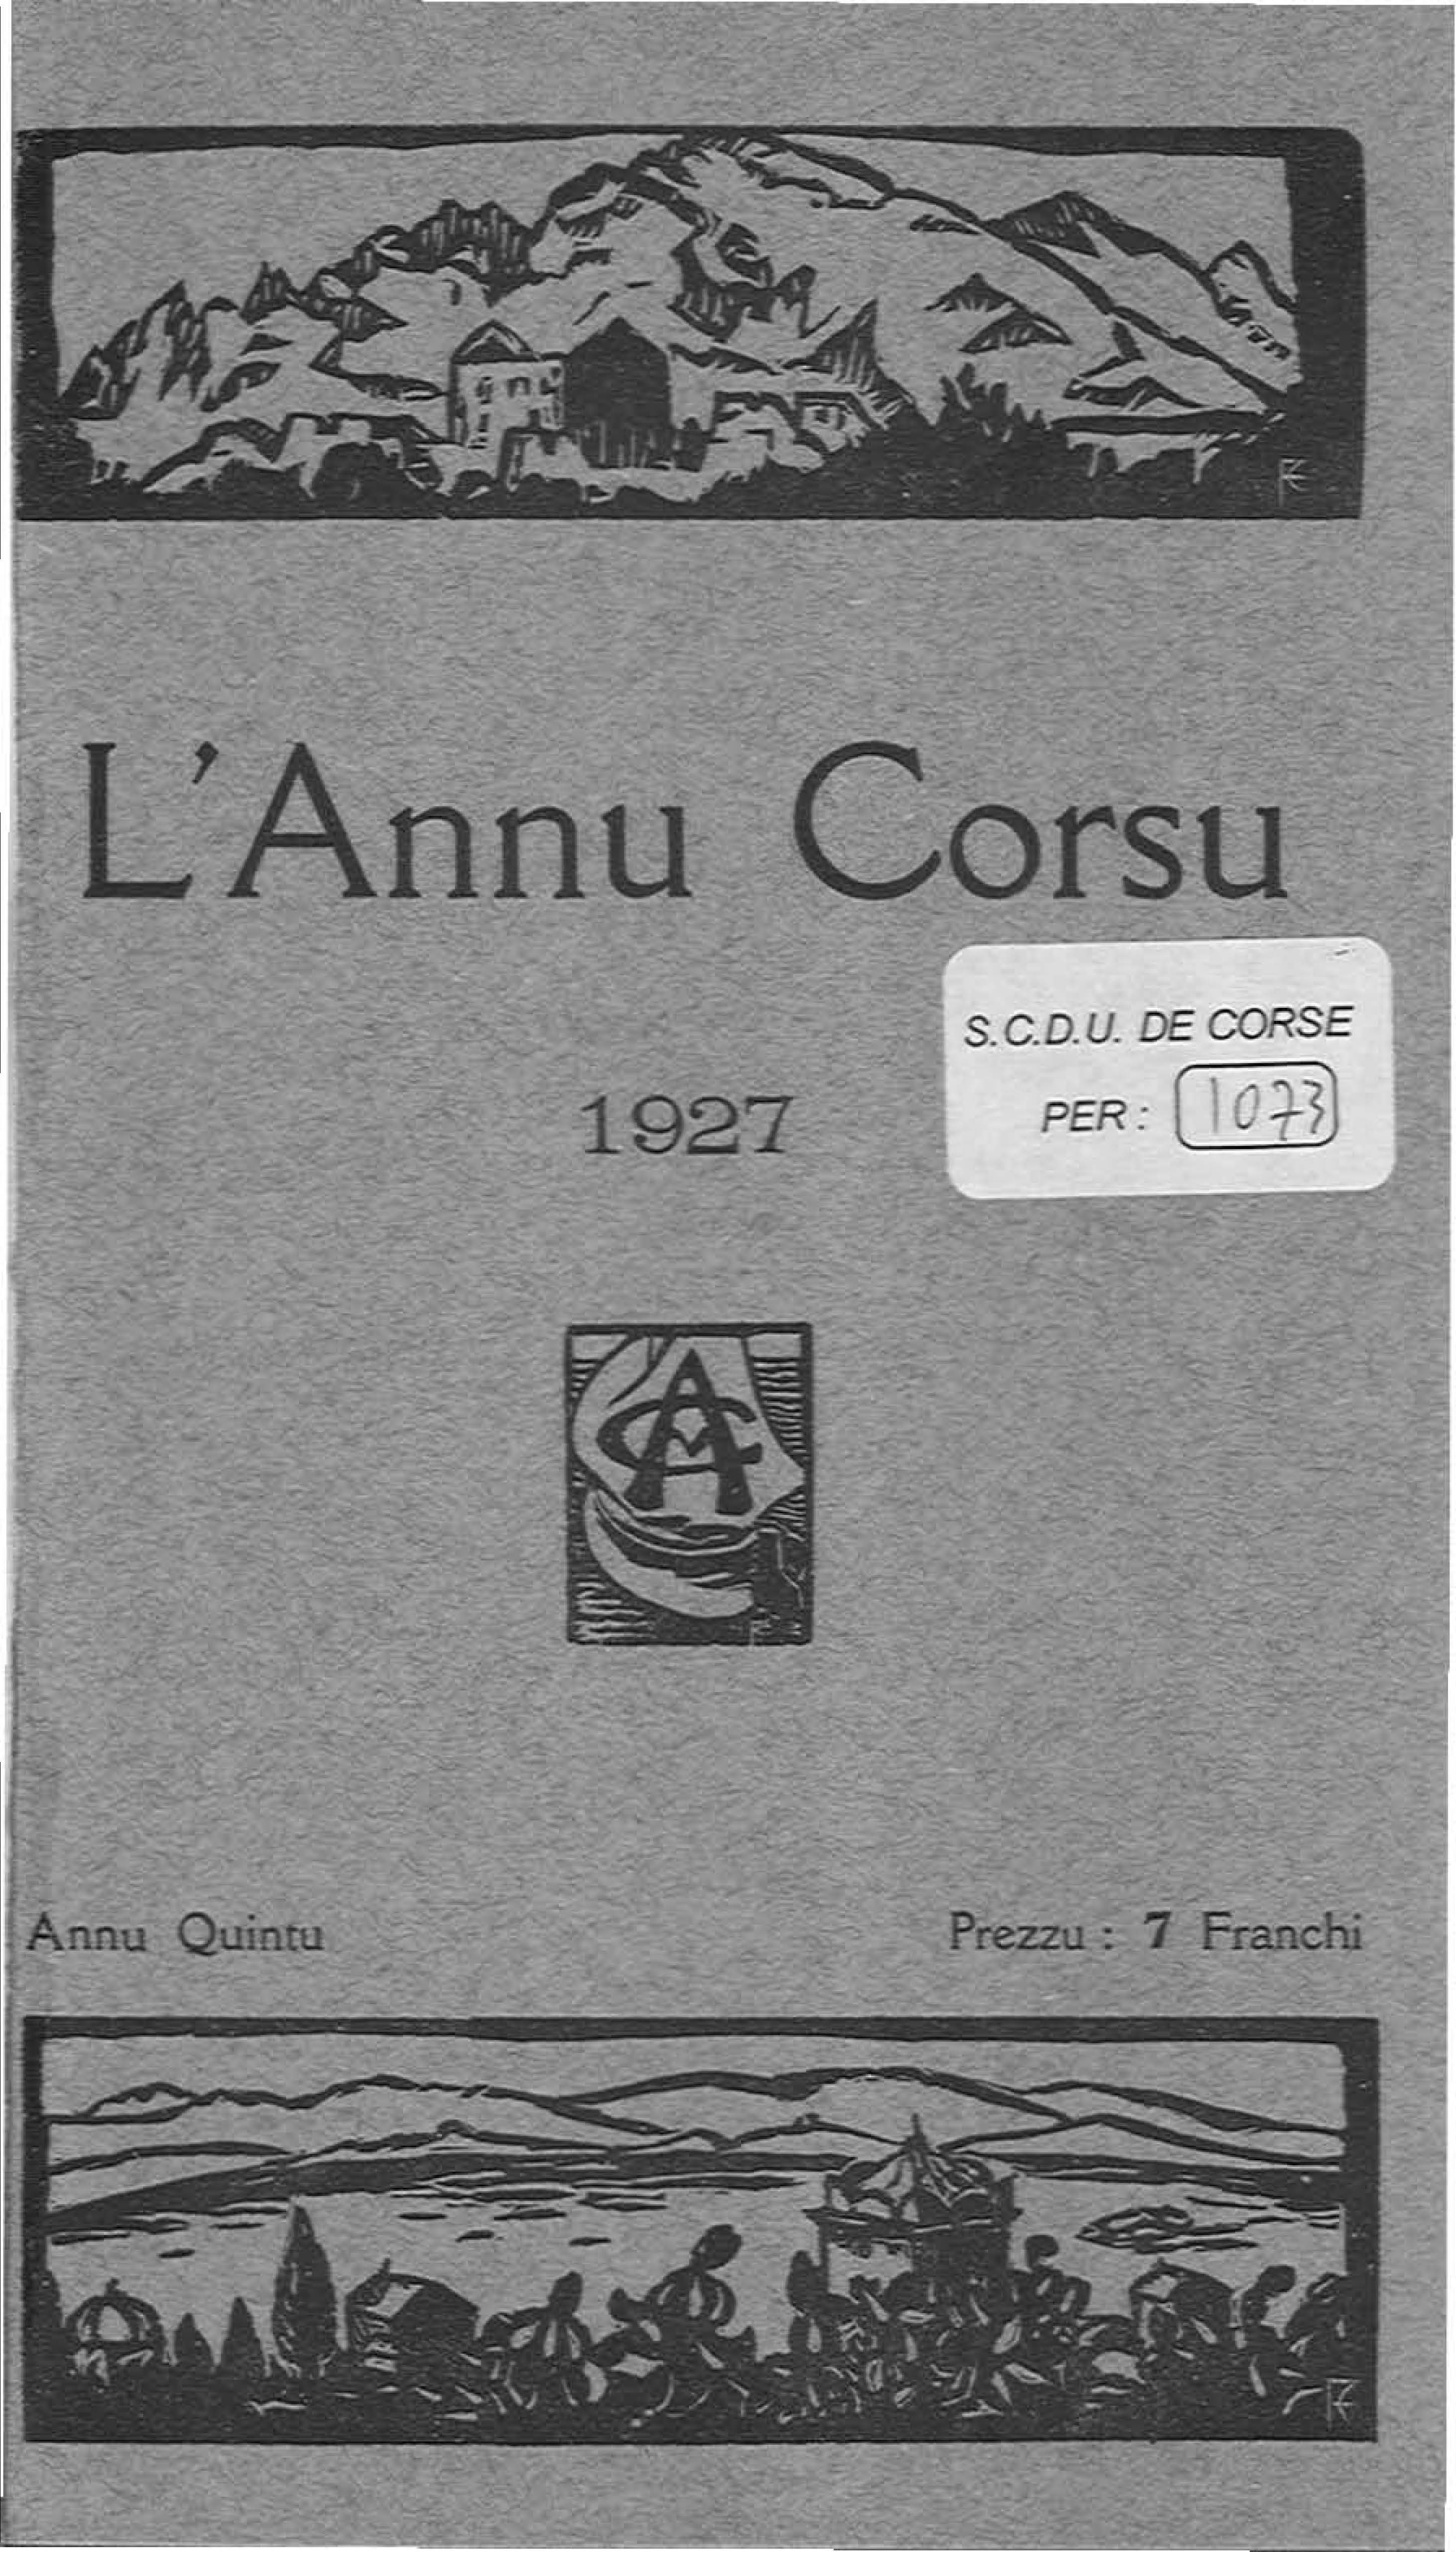 >L'Annu Corsu (1927)